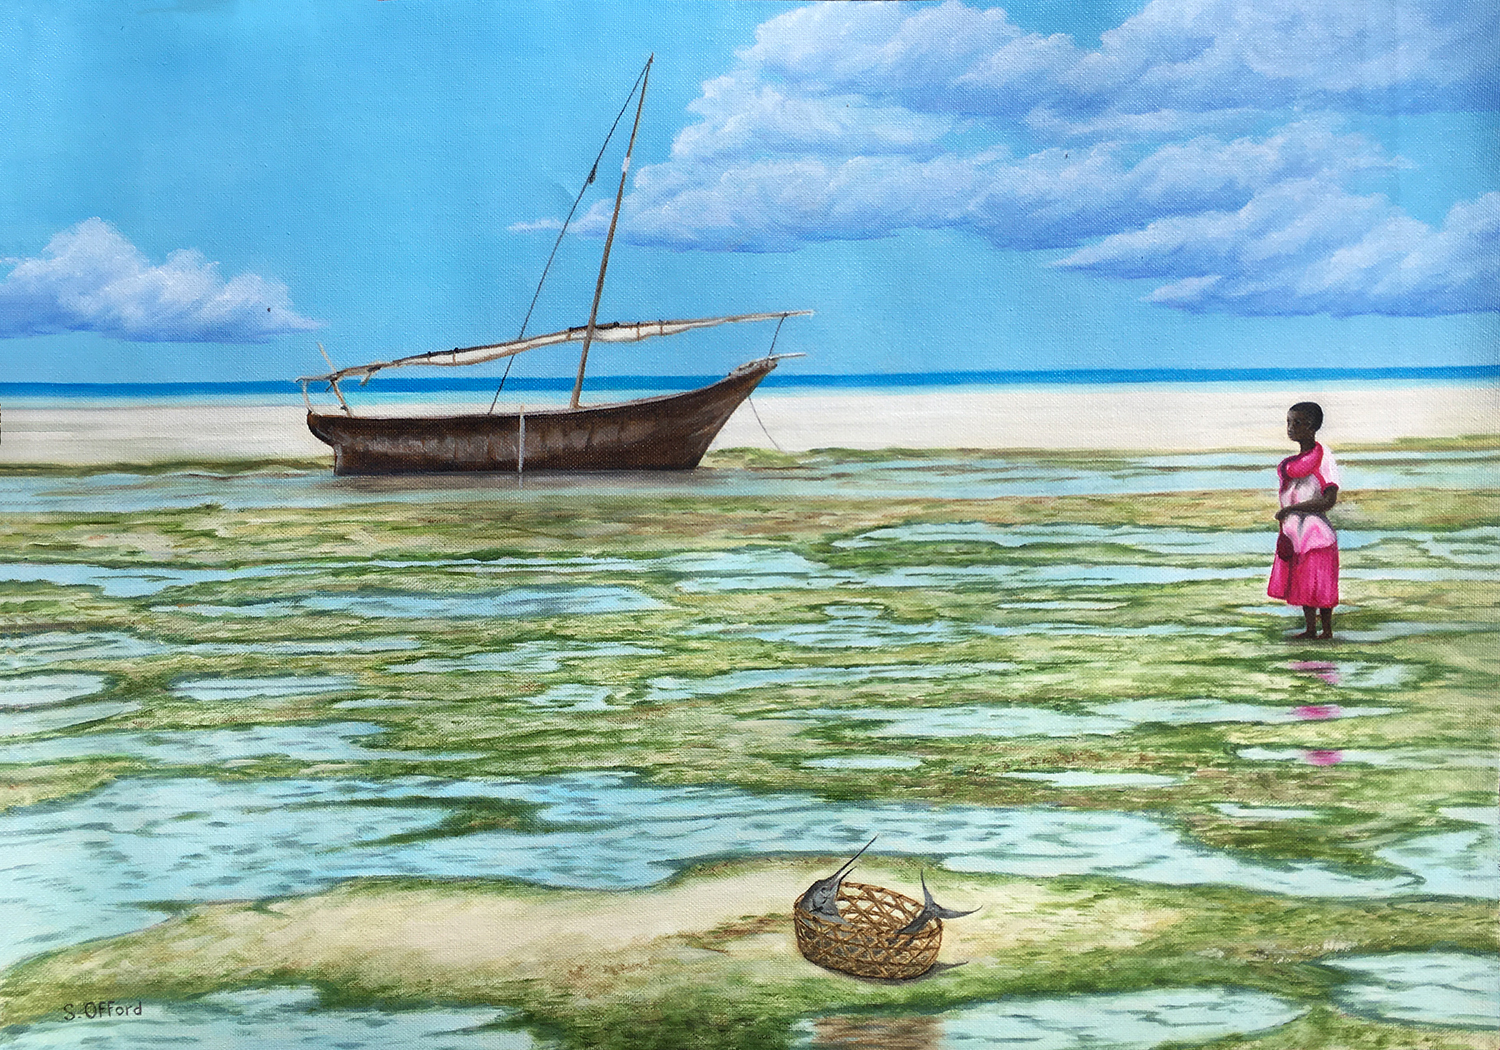 Zanzibar Seascape by Sharon Offord